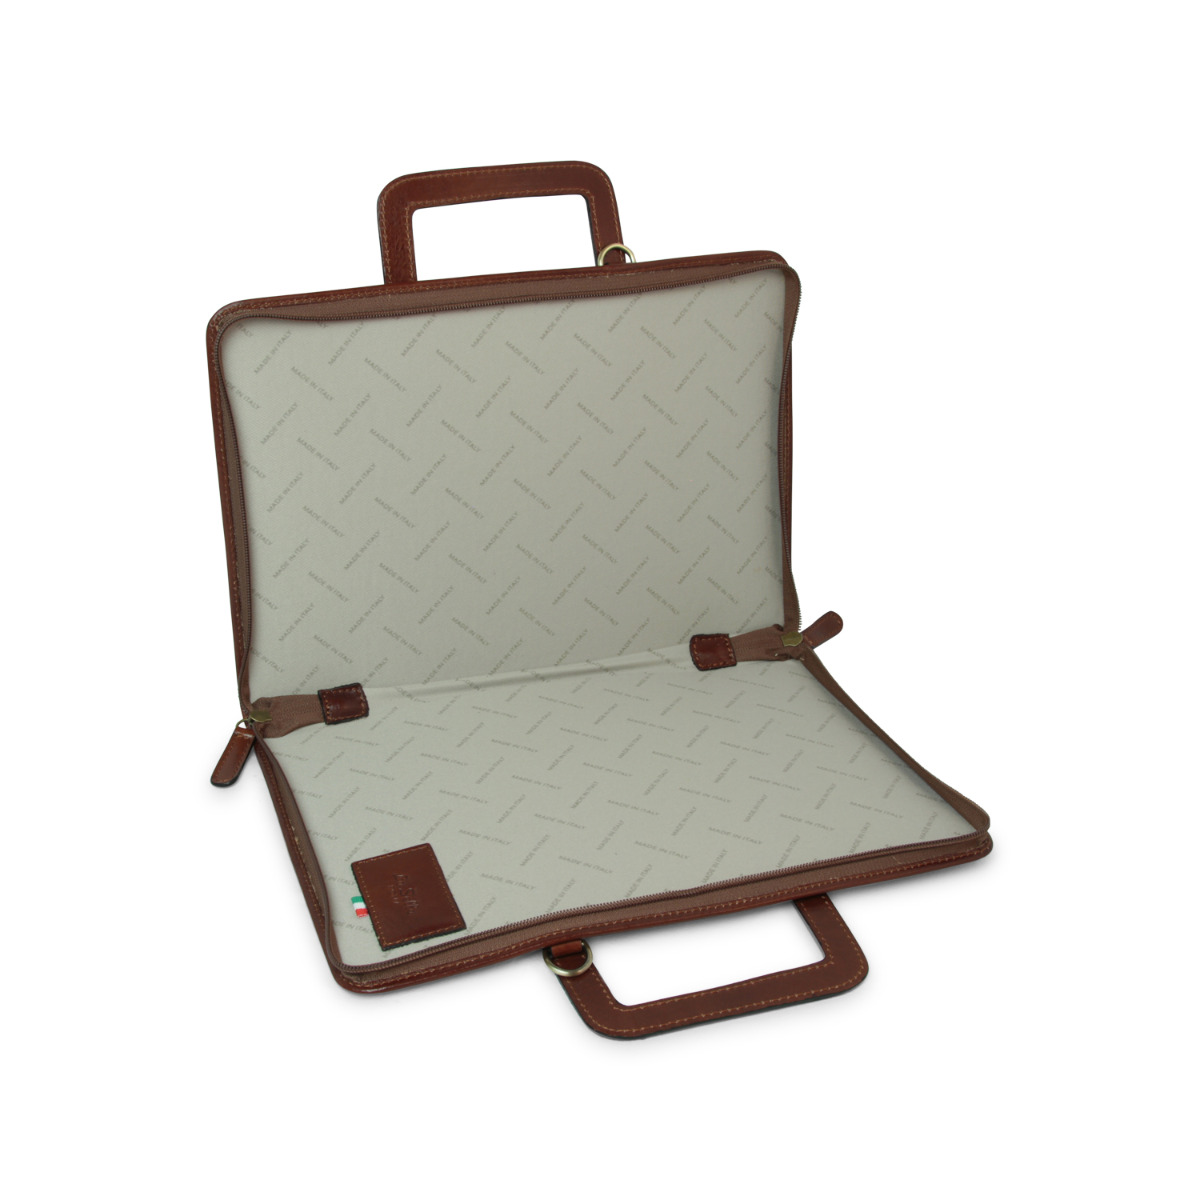 Full grain leather folder - brown|067793MA|Old Angler Firenze